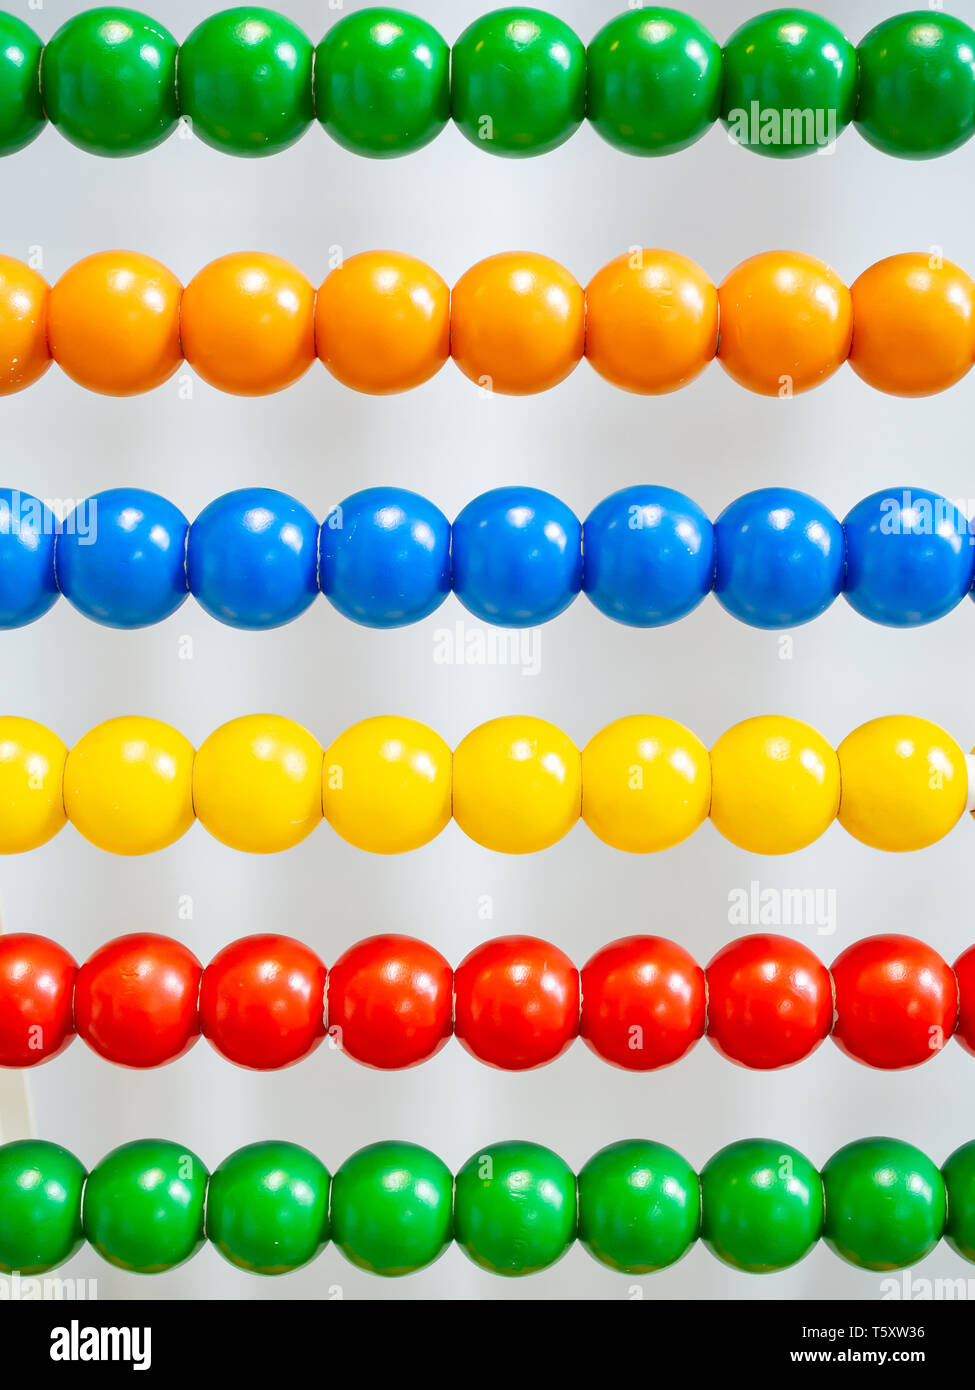 20esimo secolo abacus con palline colorate sullo sfondo Foto Stock